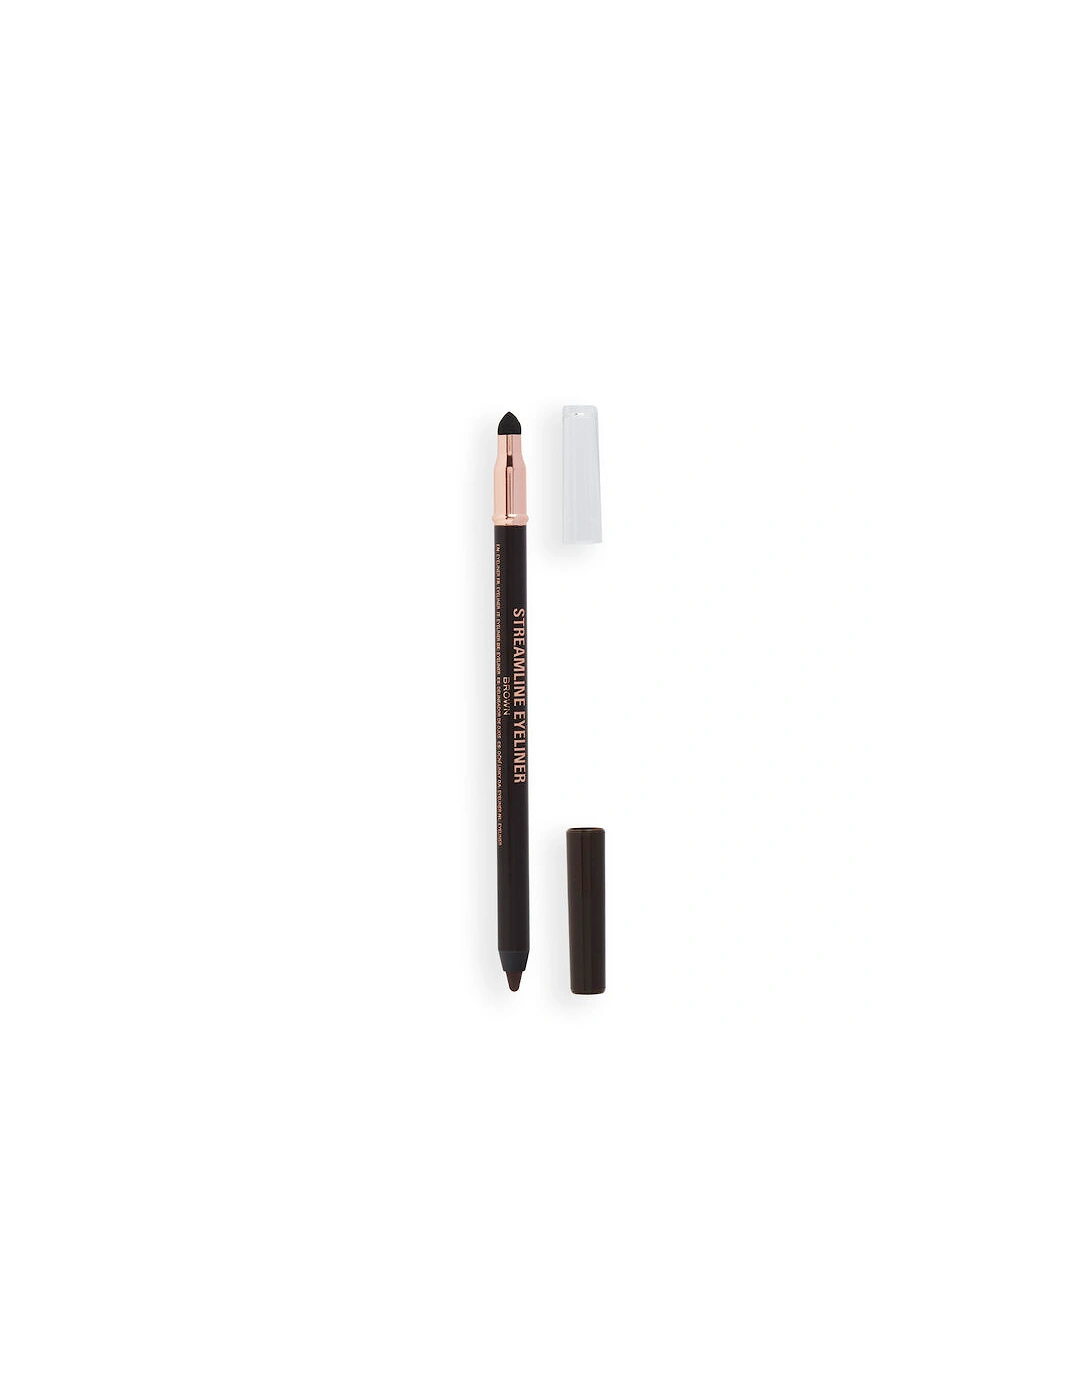 Makeup Streamline Waterline Eyeliner Pencil Brown, 2 of 1